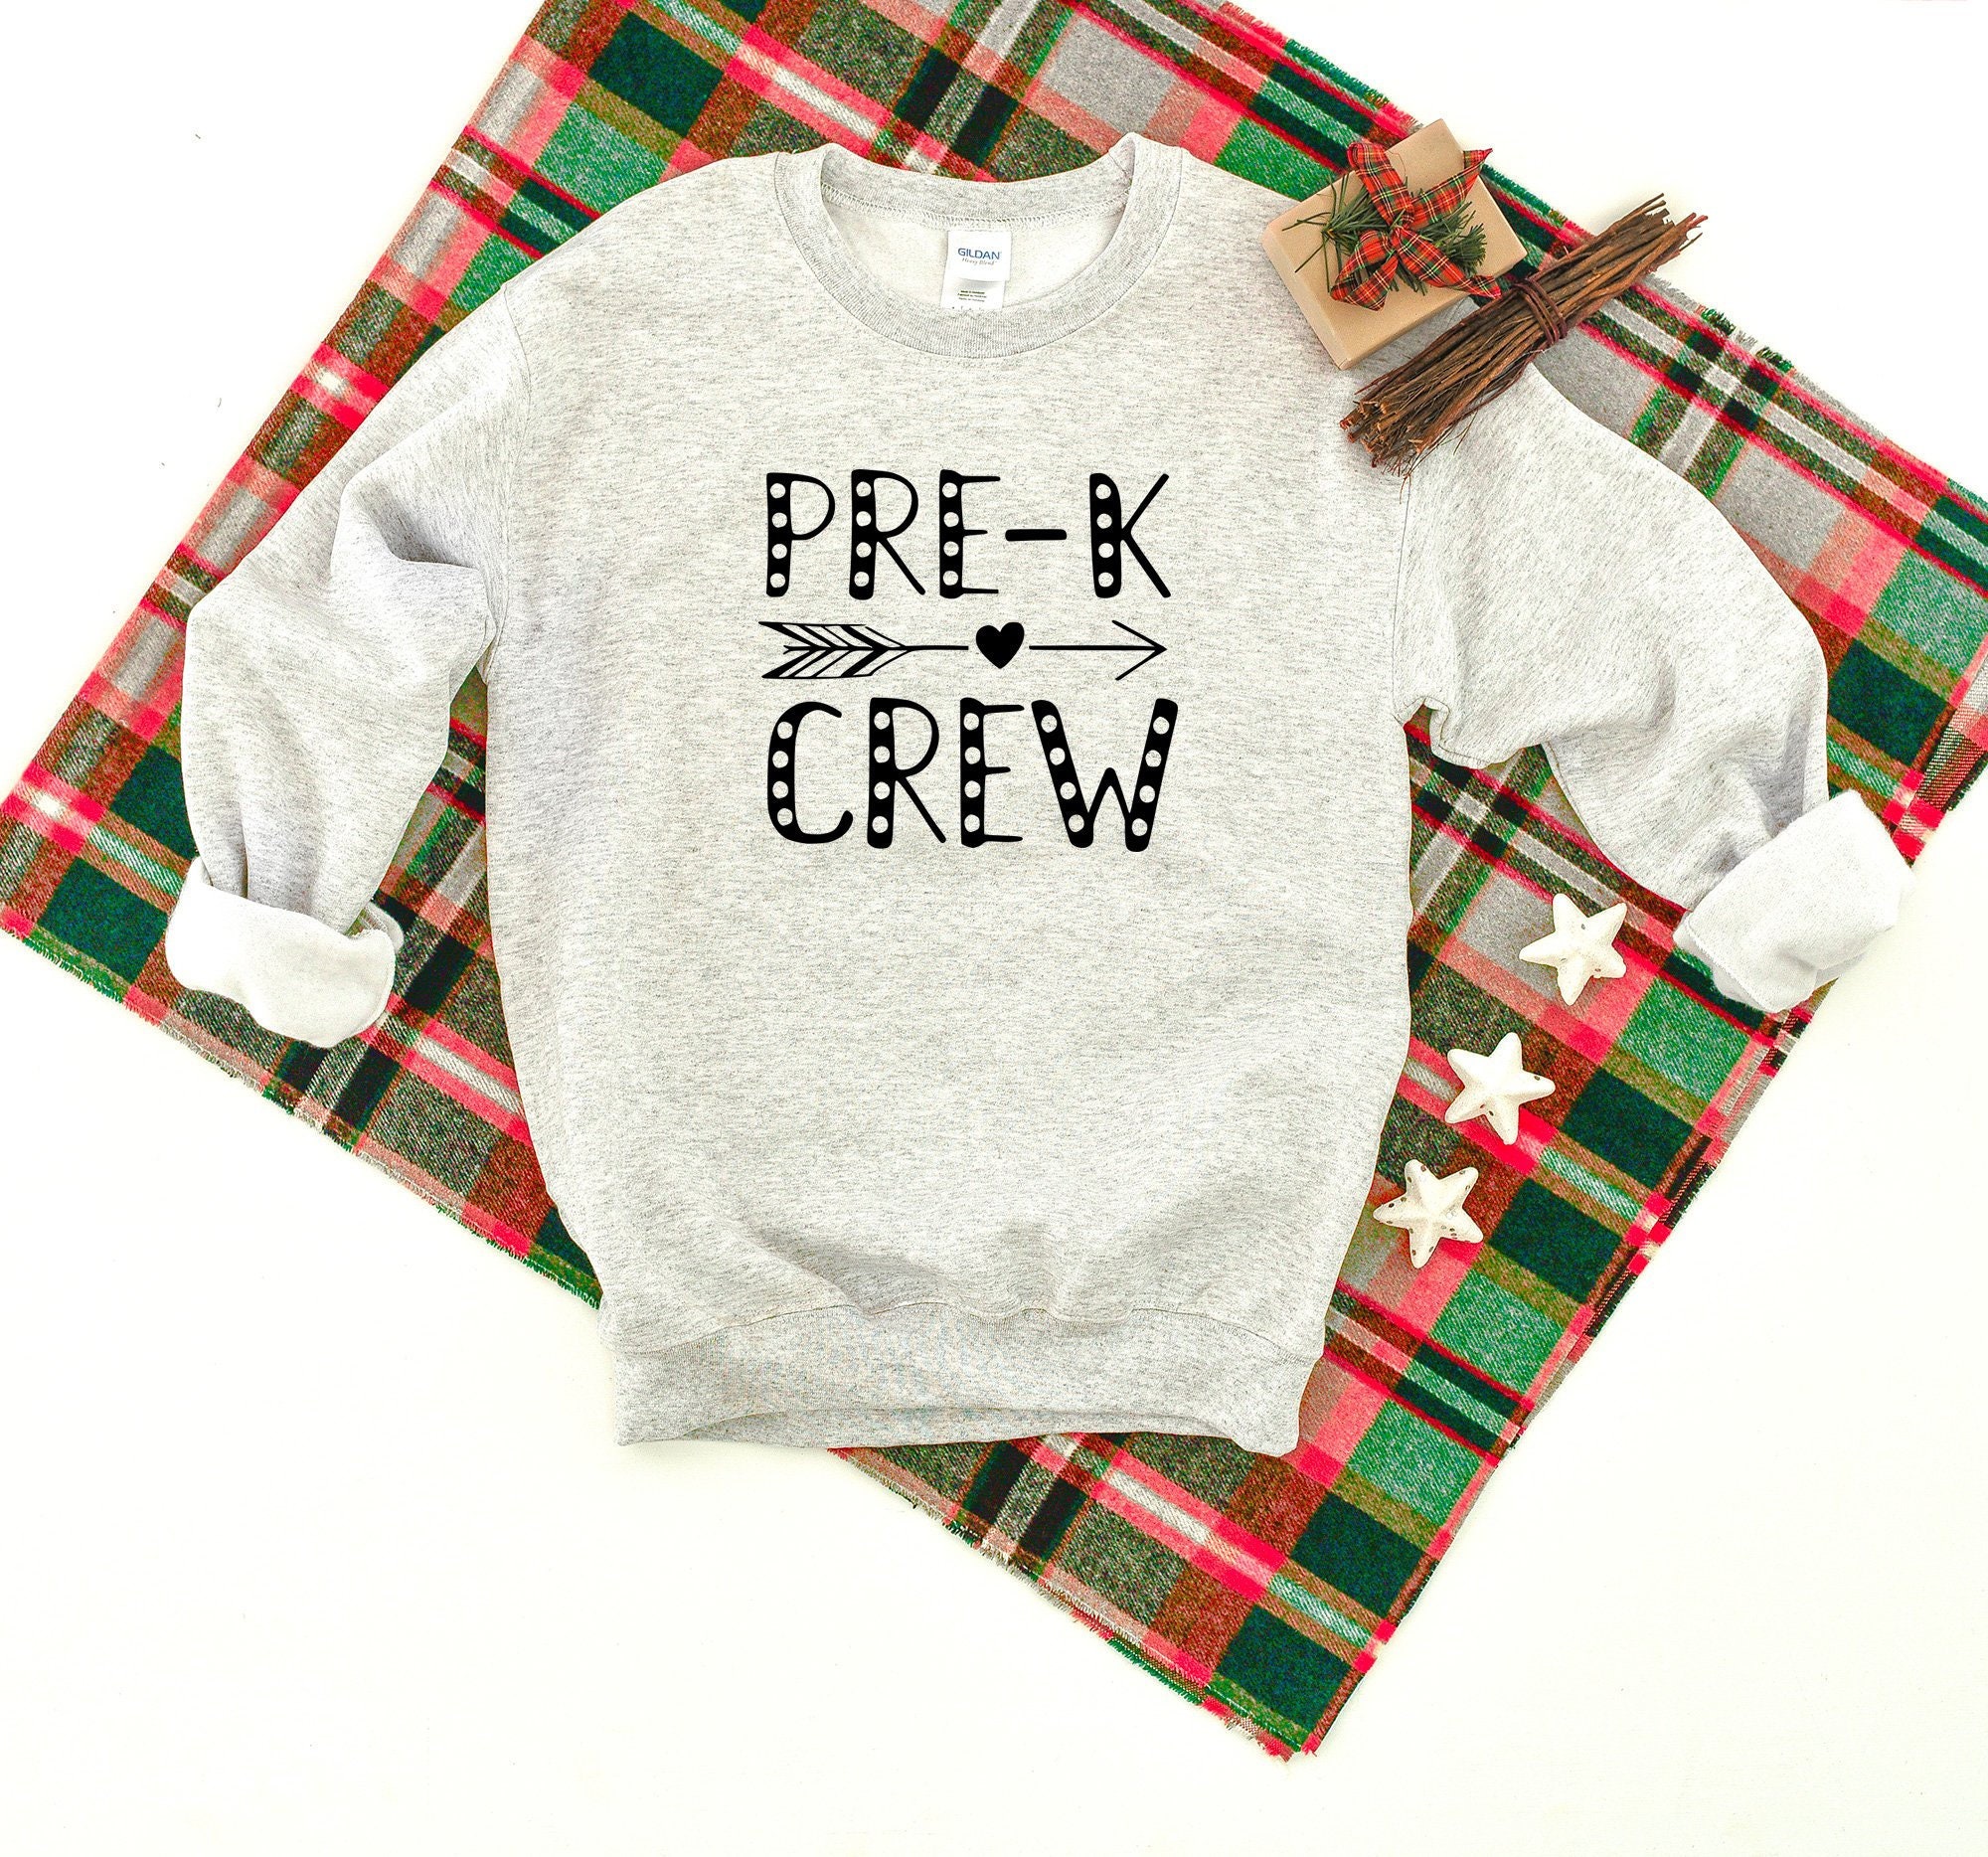 Pre-K Crew Heavy Blend Crewneck Sweatshirt, Teacher Sweater, School Pre-School Grade